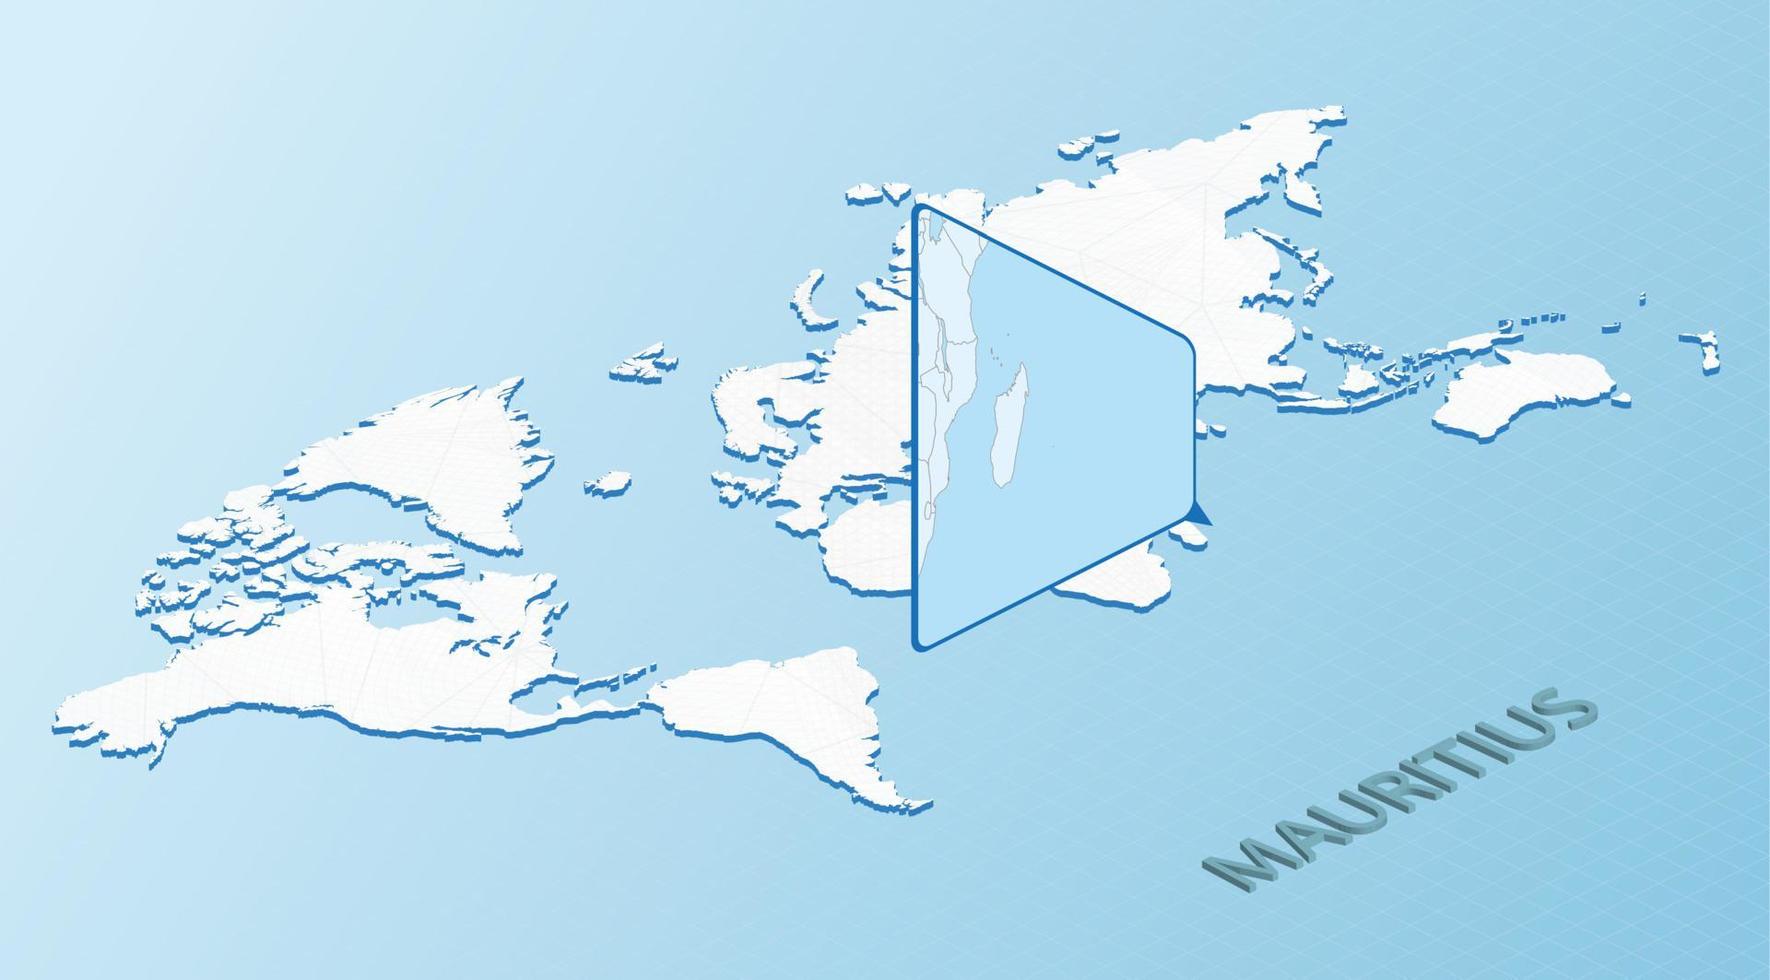 carte du monde en style isométrique avec carte détaillée de maurice. carte maurice bleu clair avec carte du monde abstraite. vecteur